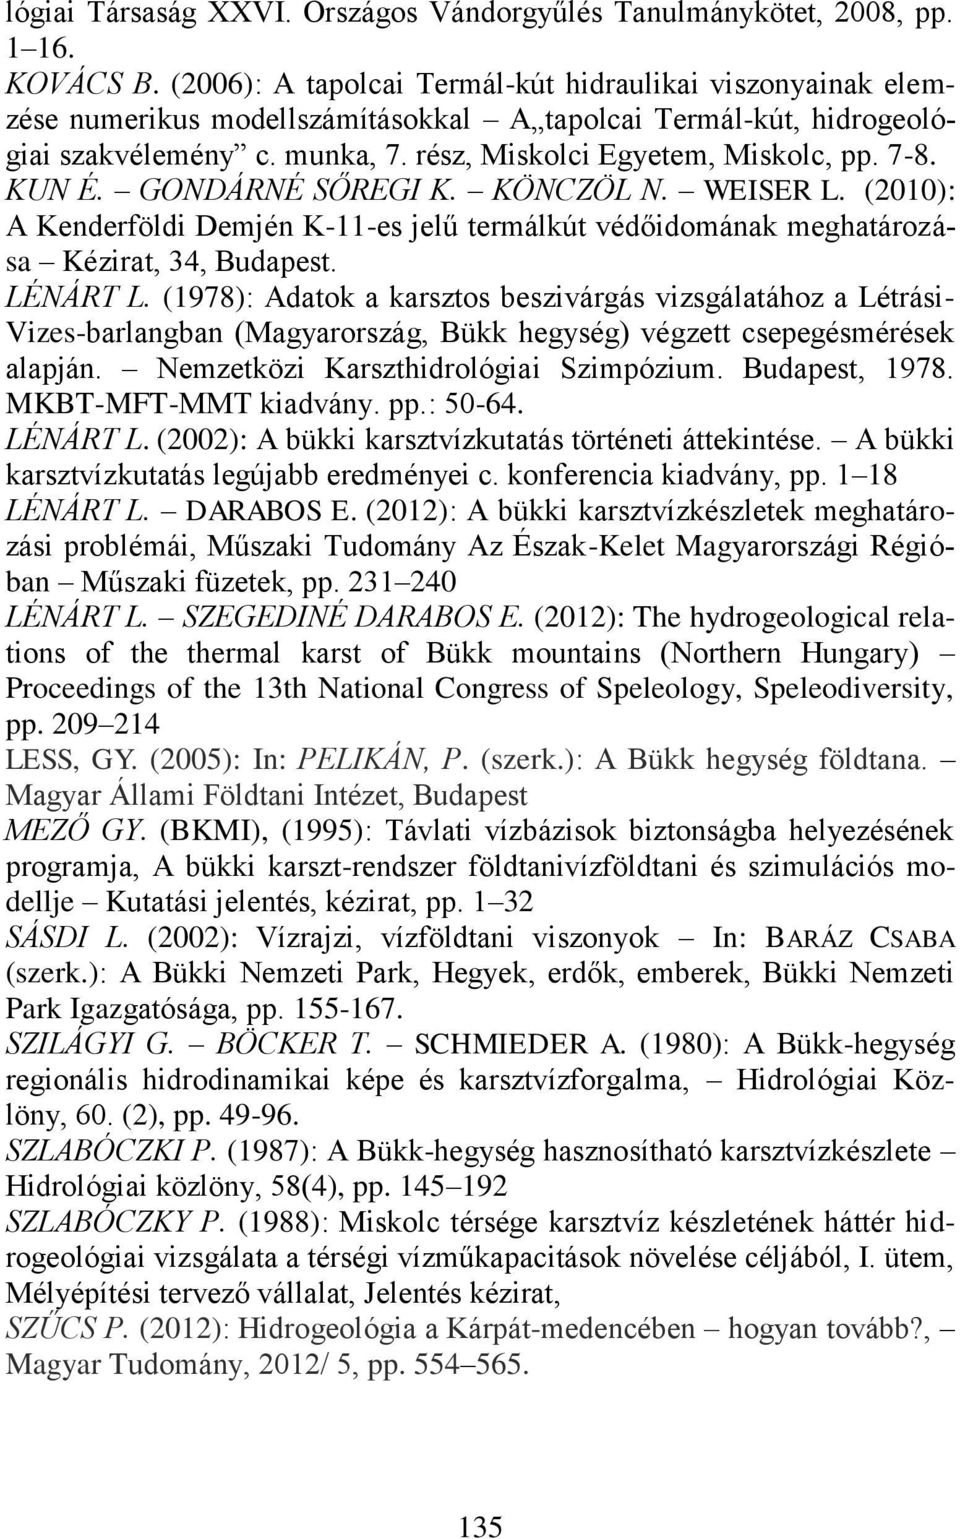 KUN É. GONDÁRNÉ SŐREGI K. KÖNCZÖL N. WEISER L. (2010): A Kenderföldi Demjén K-11-es jelű termálkút védőidomának meghatározása Kézirat, 34, Budapest. LÉNÁRT L.